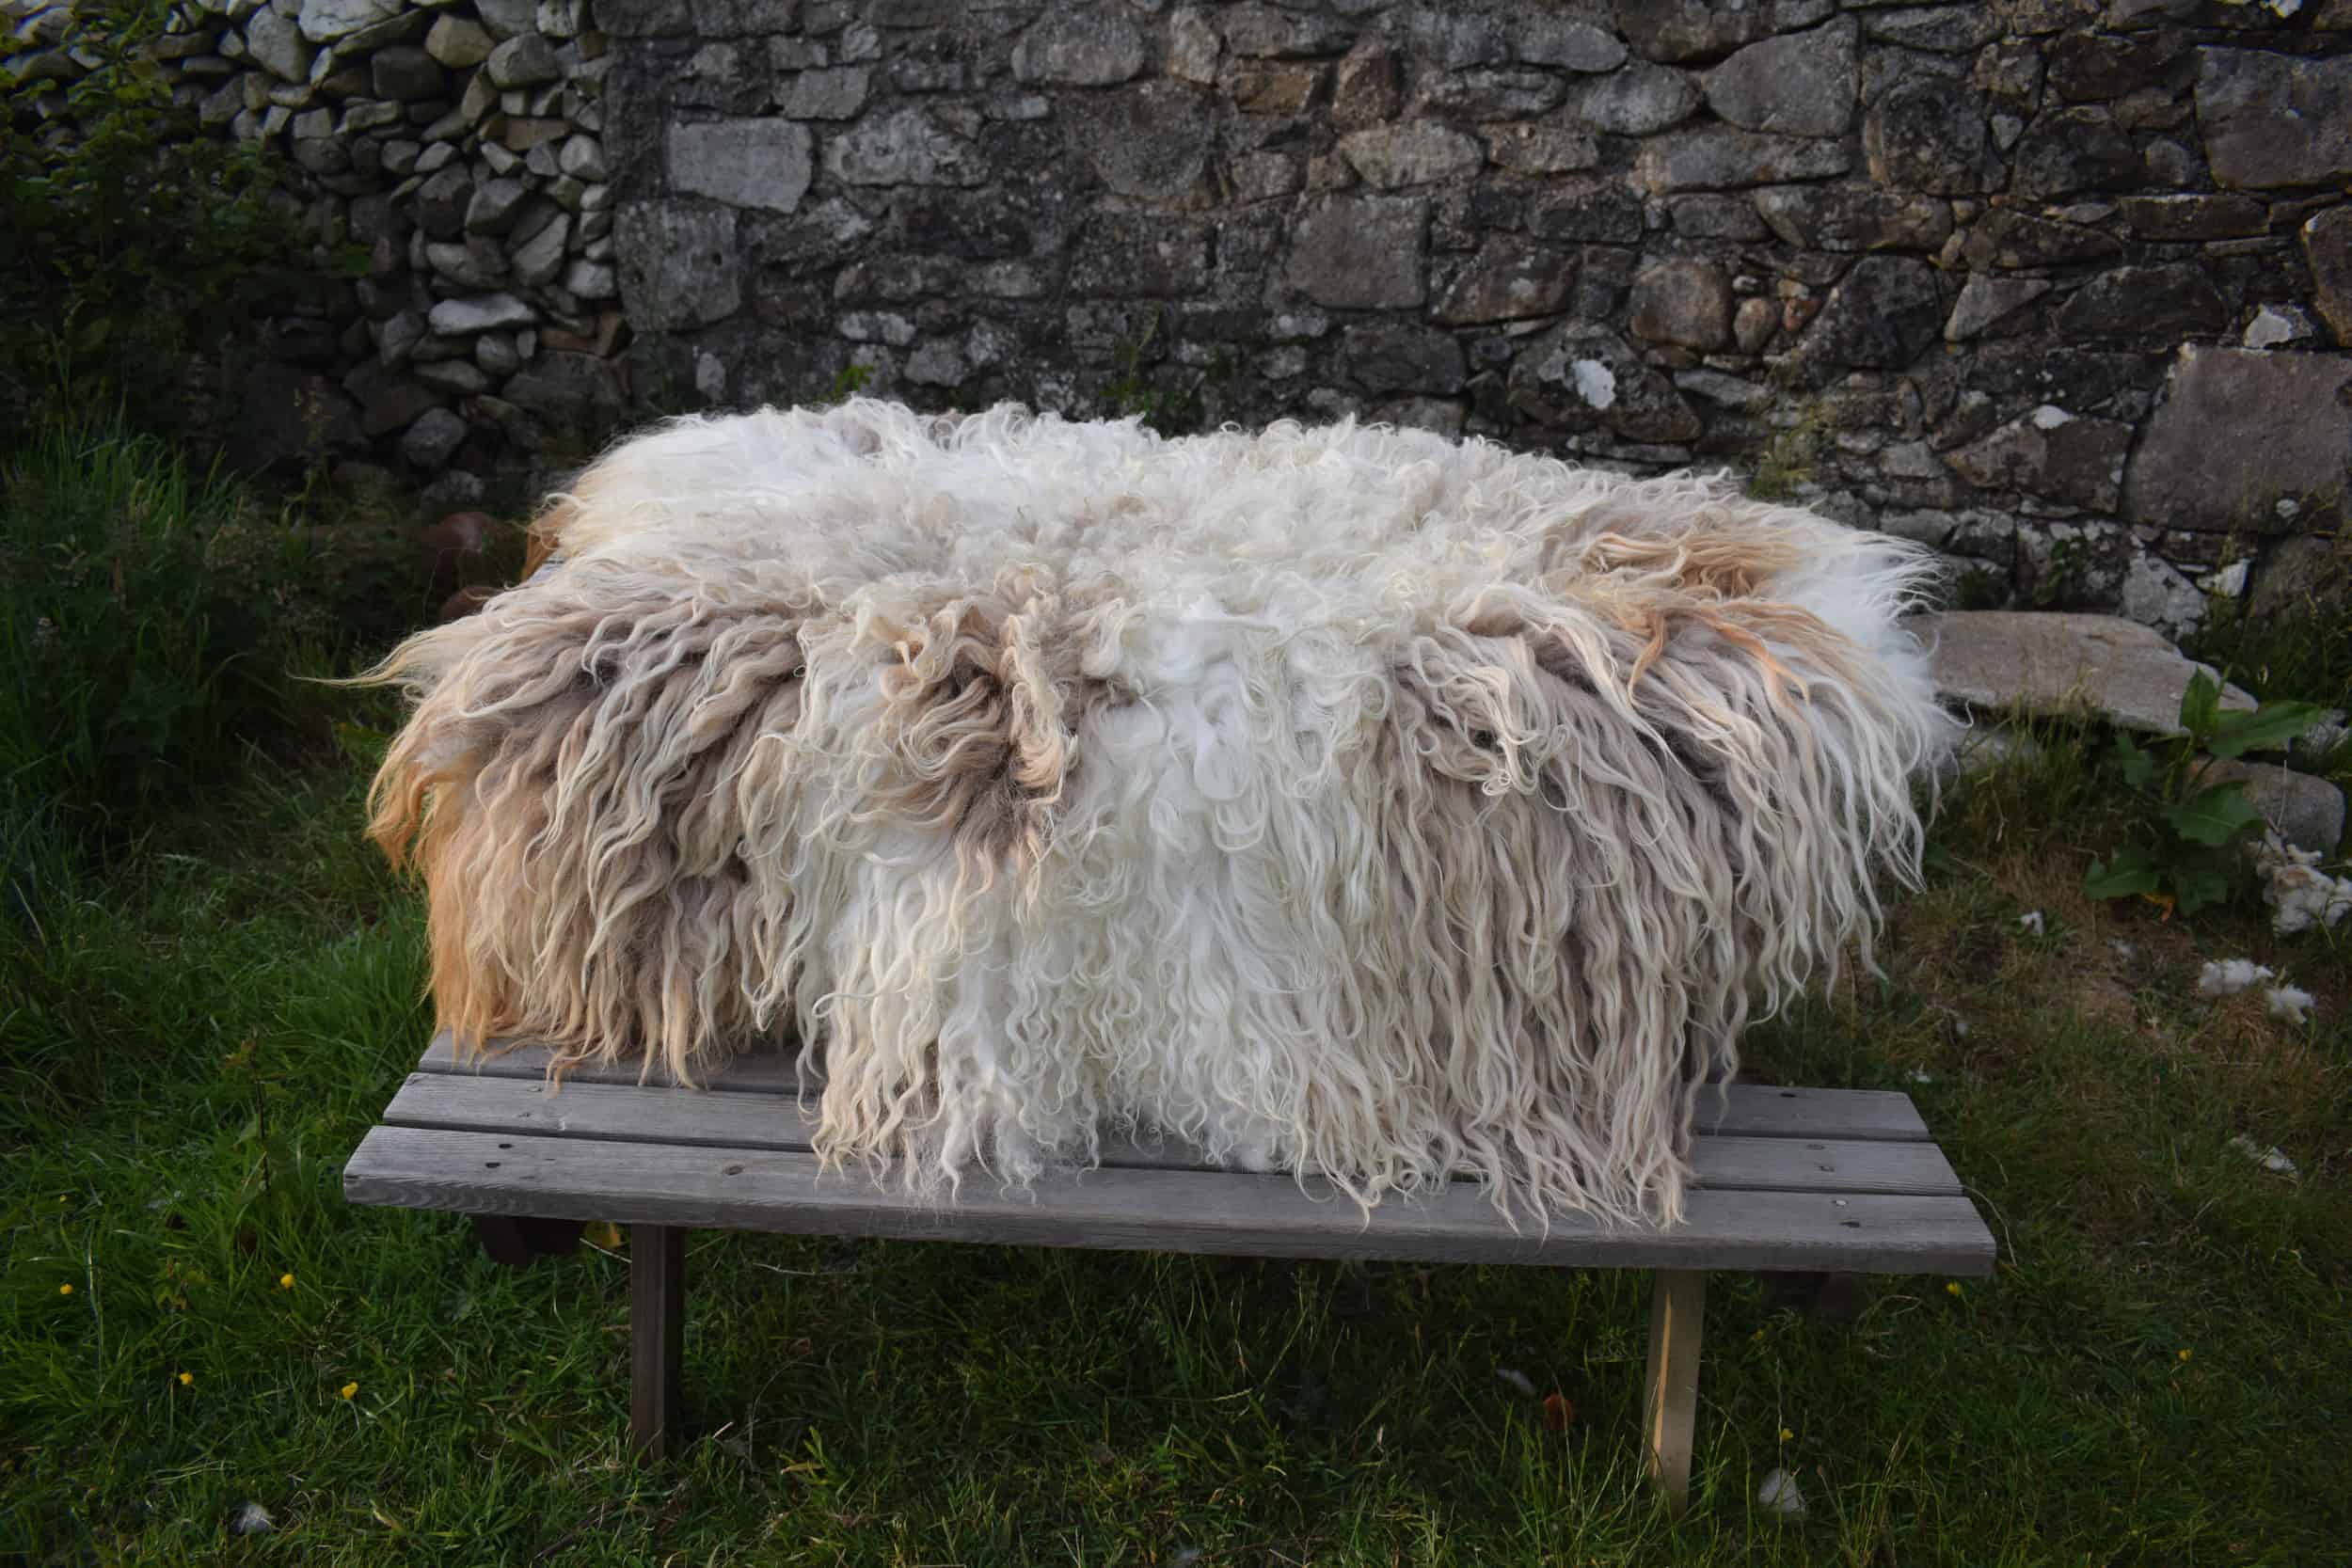 dandelion felted fleece rug